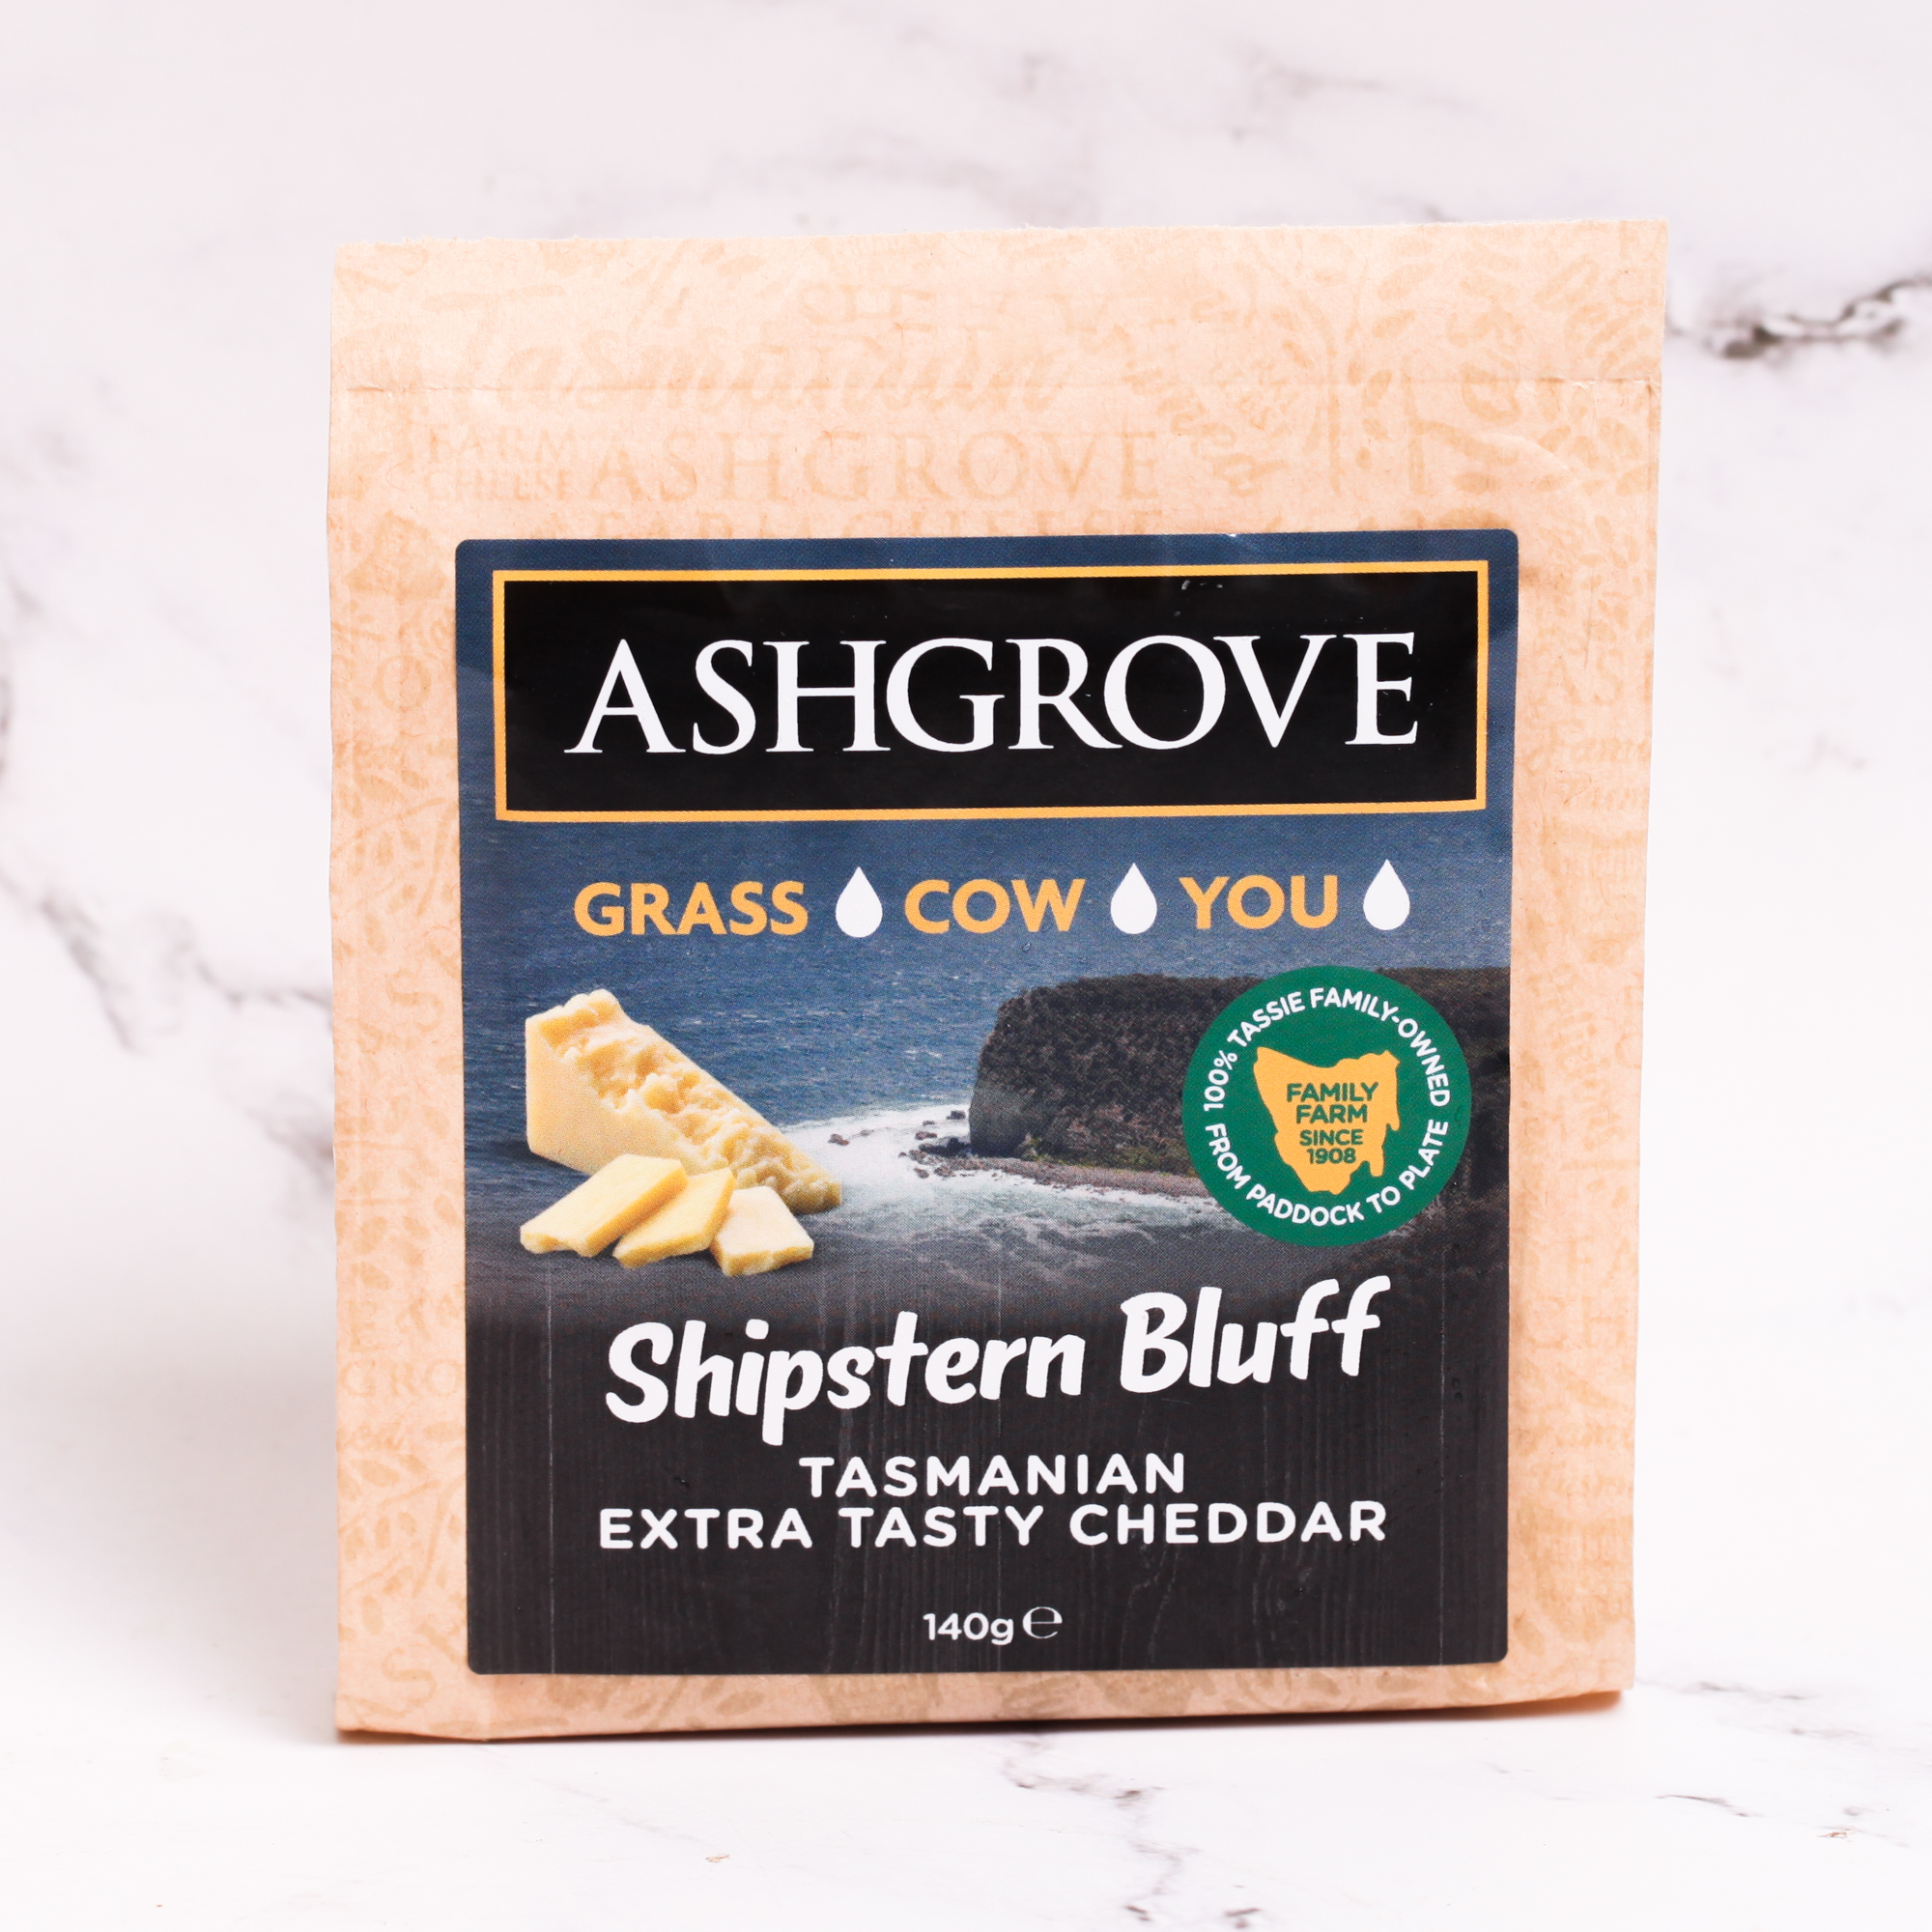 Ashgrove Shipstern Bluff Tasmania Extra Tasty Cheddar